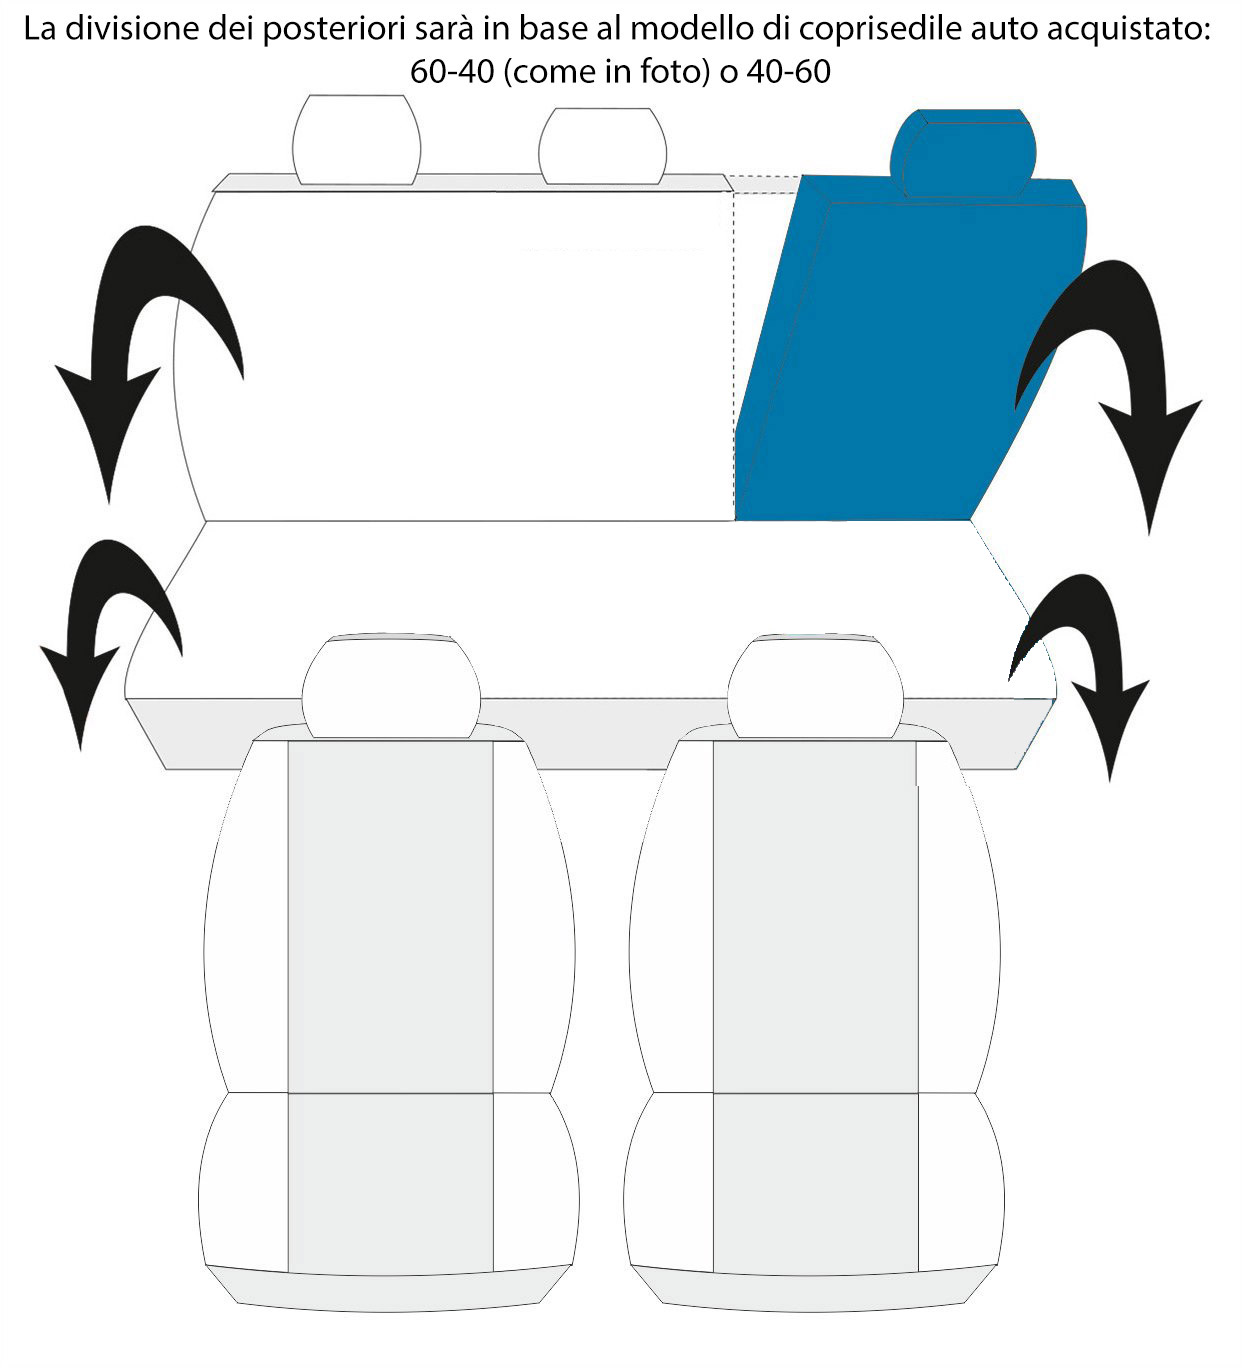 Lupex Shop Copri-sedili Auto Compatibili Panda Seconda Serie (mod.169)  Versione 60e40, Nero Bianco, Set Copri-Sedile Anteriori e Posteriori, Logo Ricamato, Airbag Compatibile